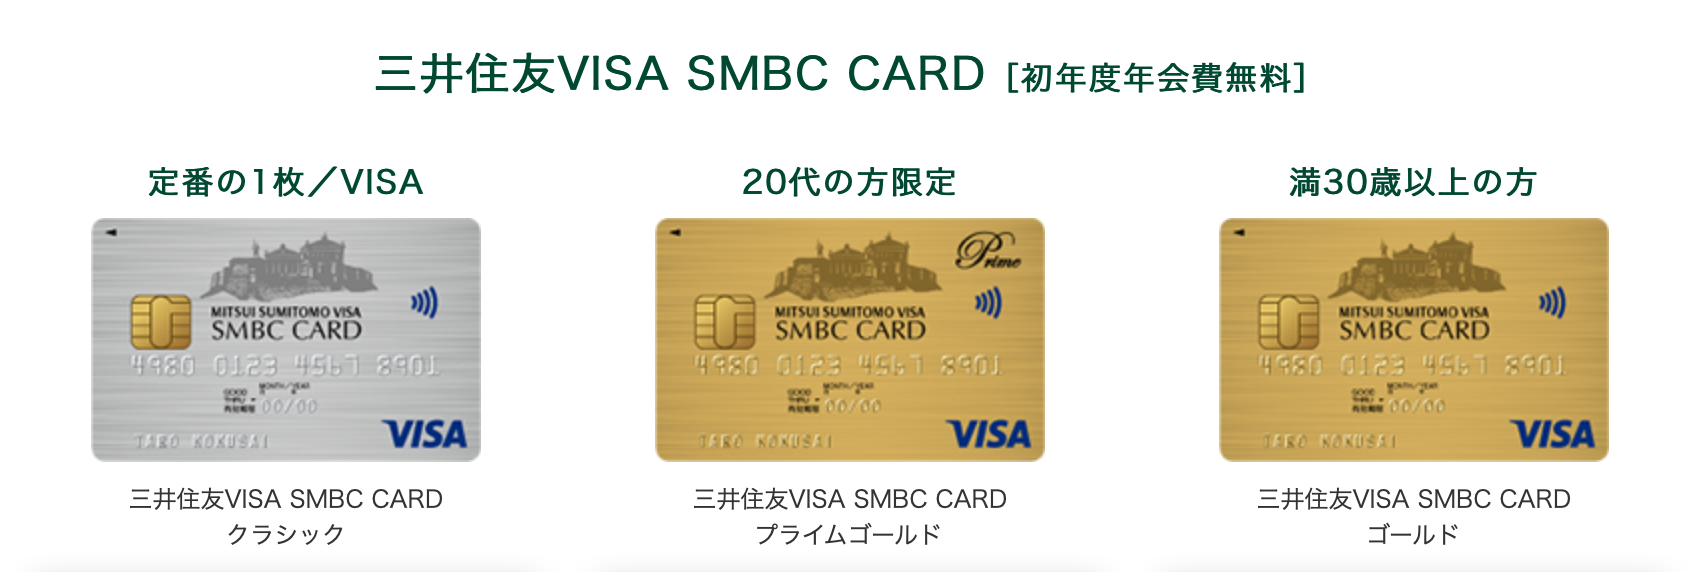 三井住友VISA SMBC CARD